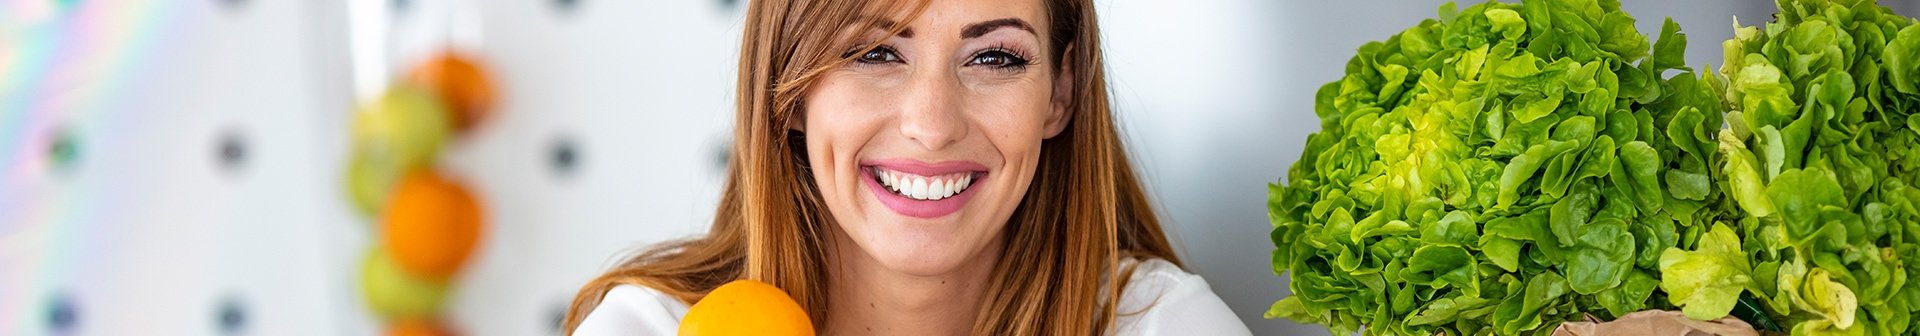 Eine lächelnde junge Frau mit einem Glas Orangensaft